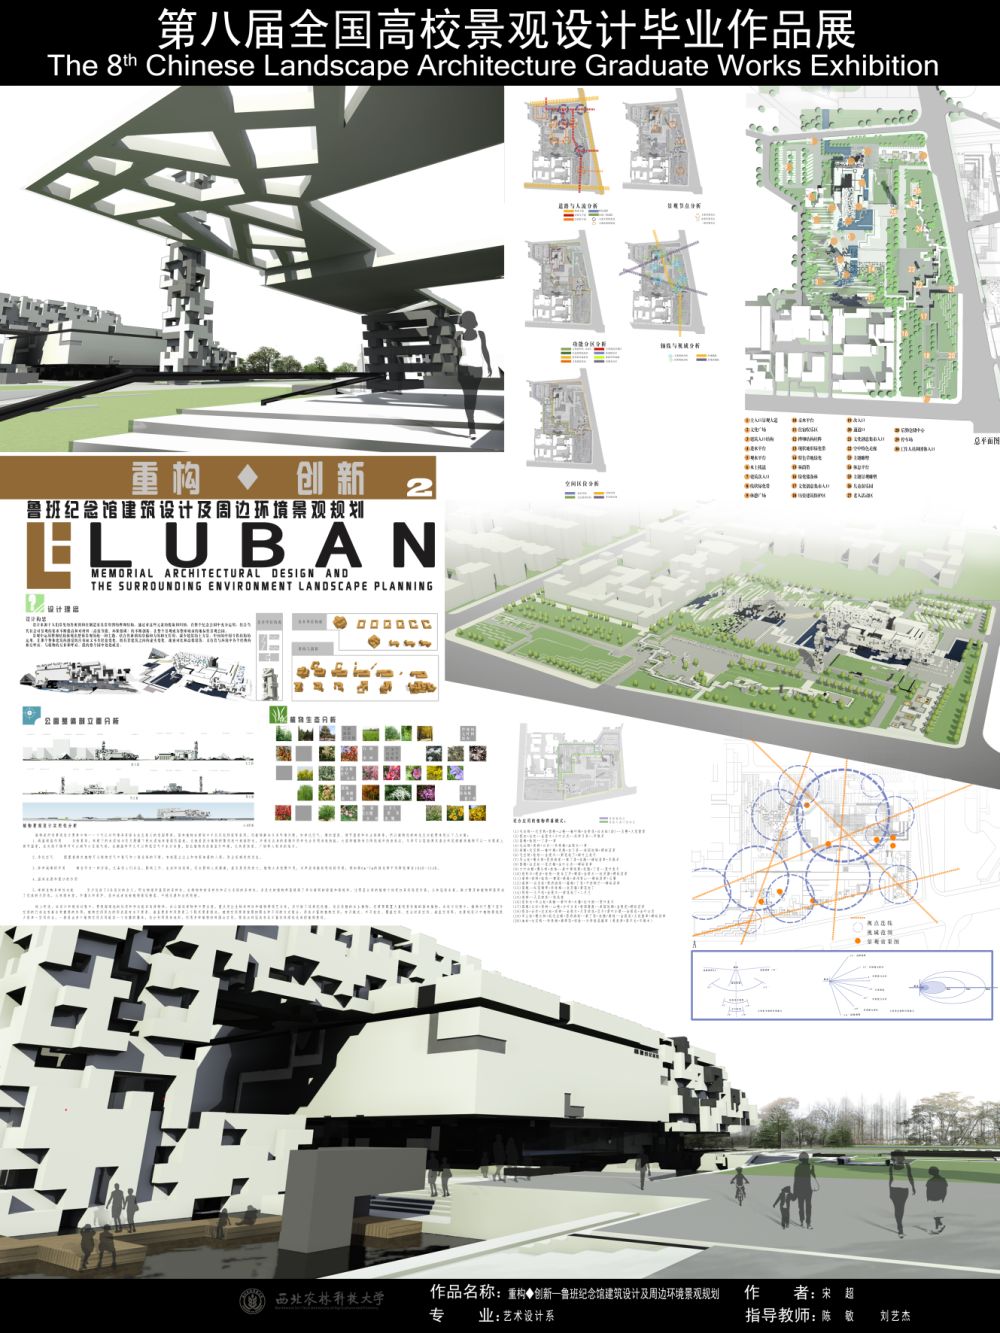 重构◆创新—鲁班纪念馆建筑设计及周边环境景观规划-2